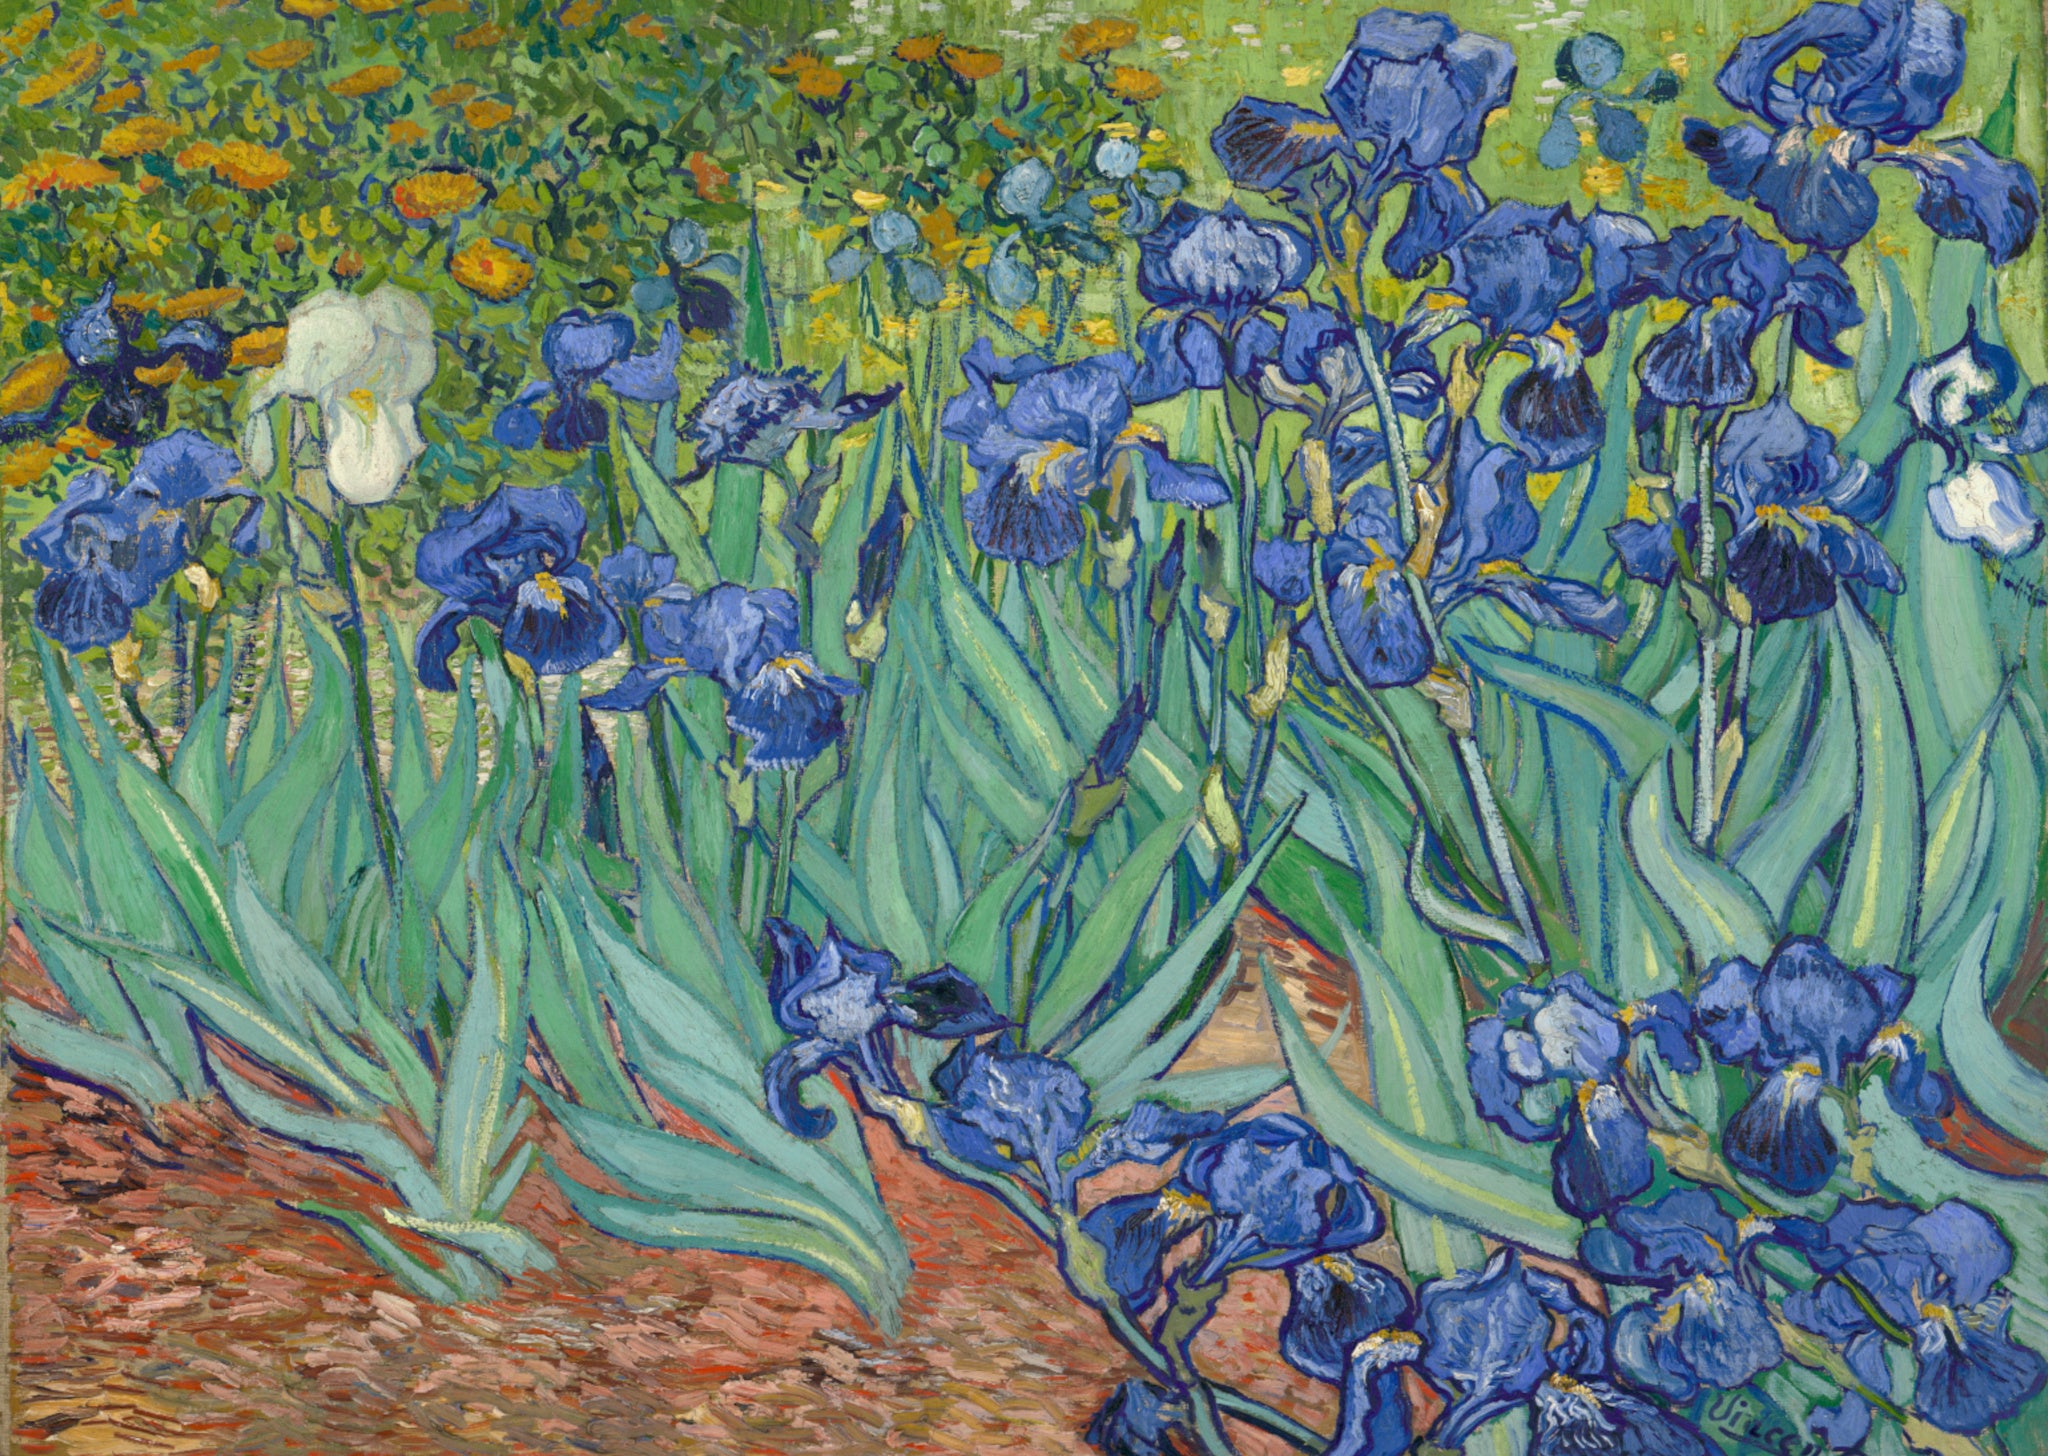 Vincent Van Gogh - Irises - A4 Mini Print/Poster